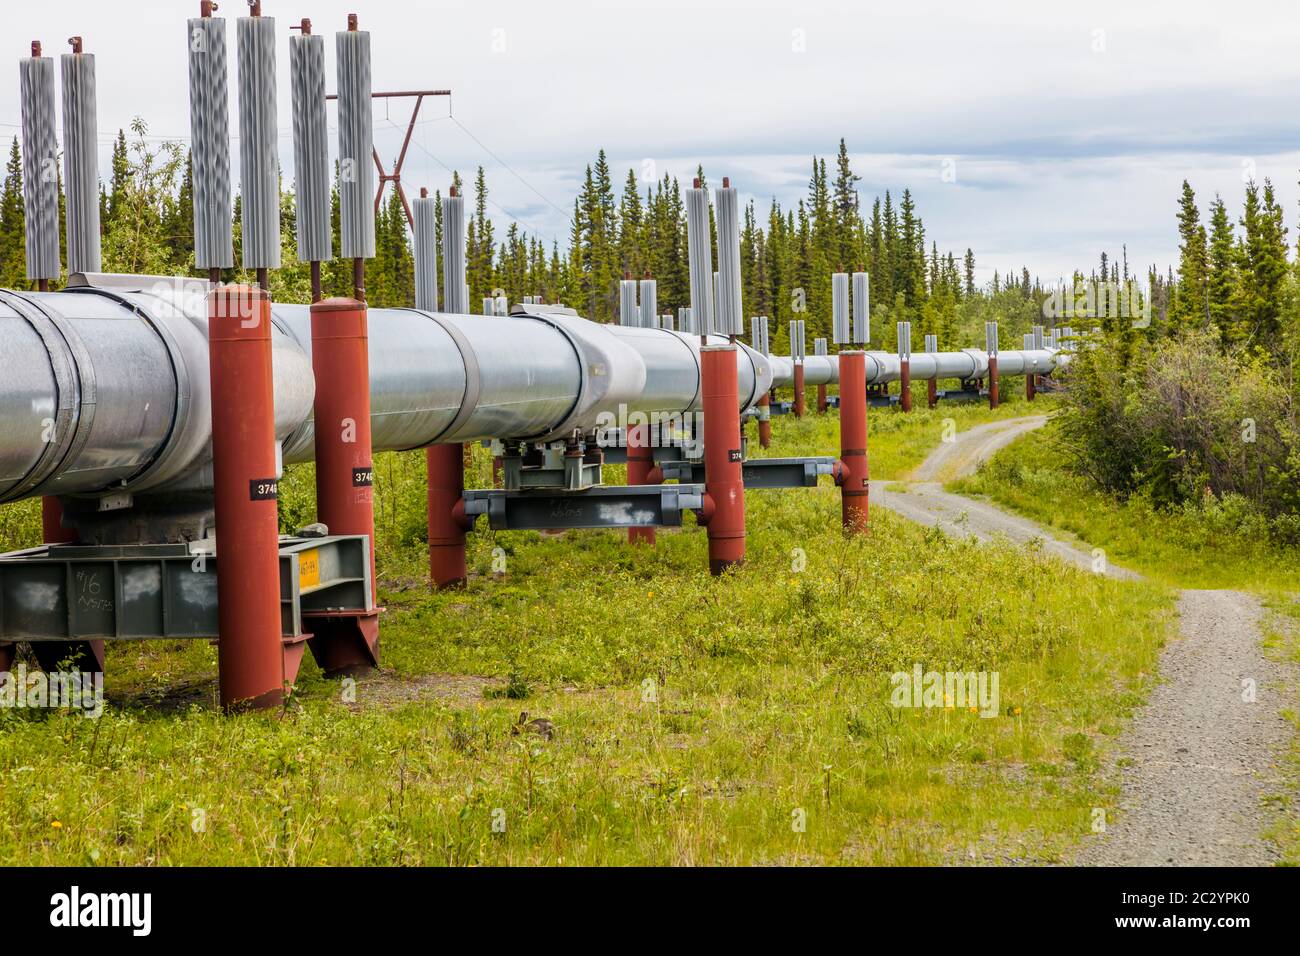 Alyeska Pipeline pasando por el paisaje, Glennallen, Alaska, EE.UU Foto de stock